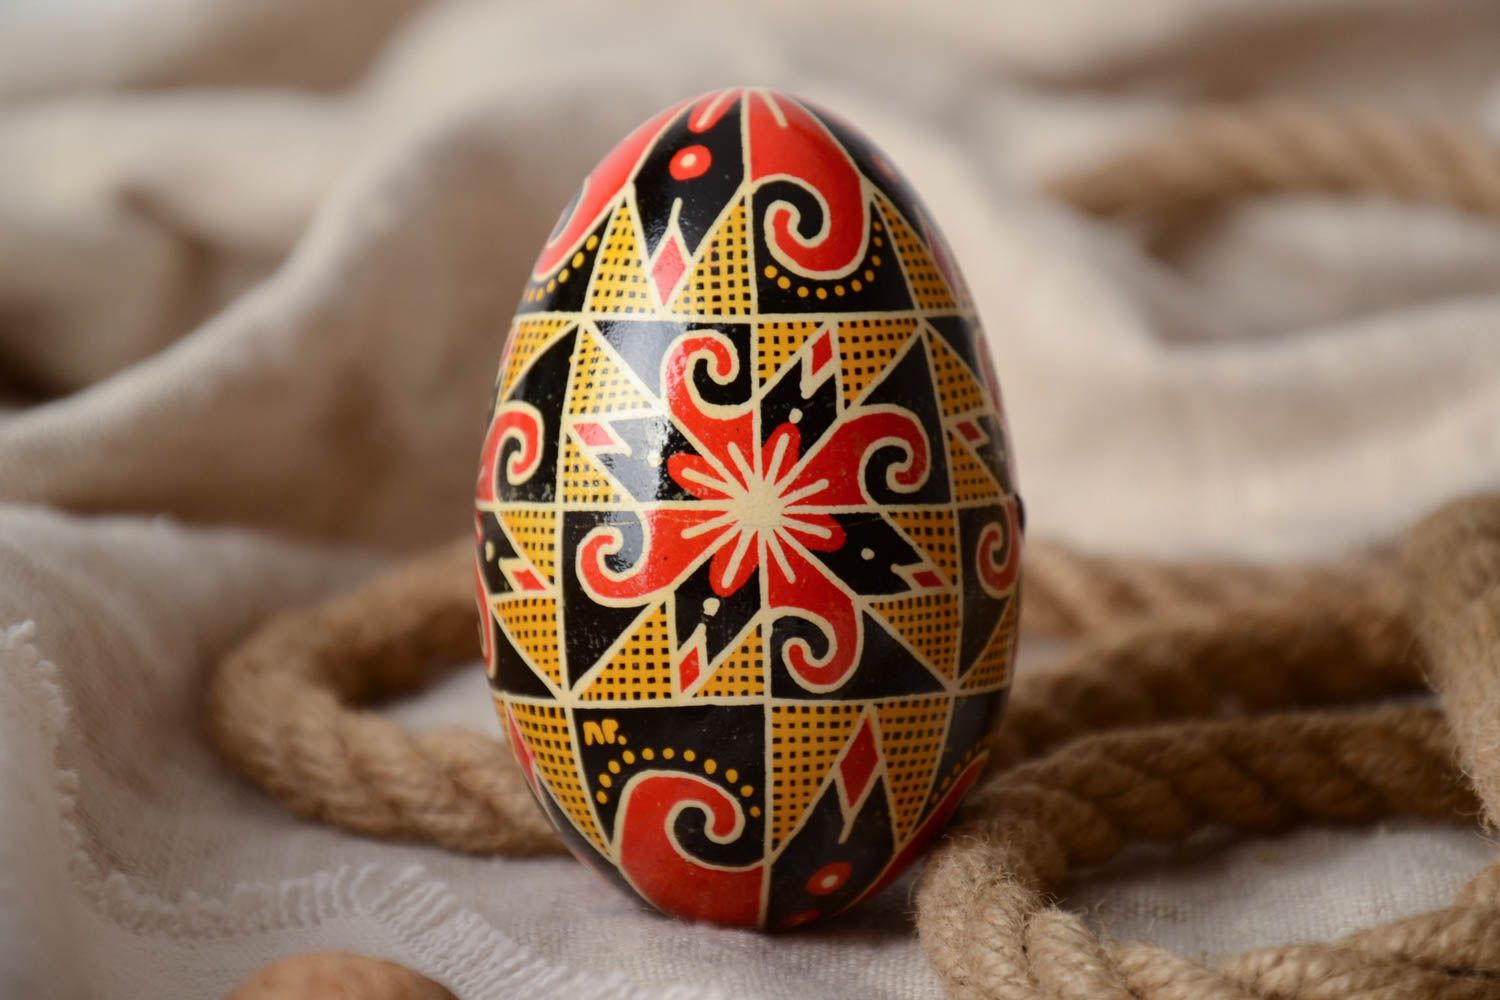 Расписное пасхальное яйцо с орнаментом в восковой технике контрастного цвета фото 1